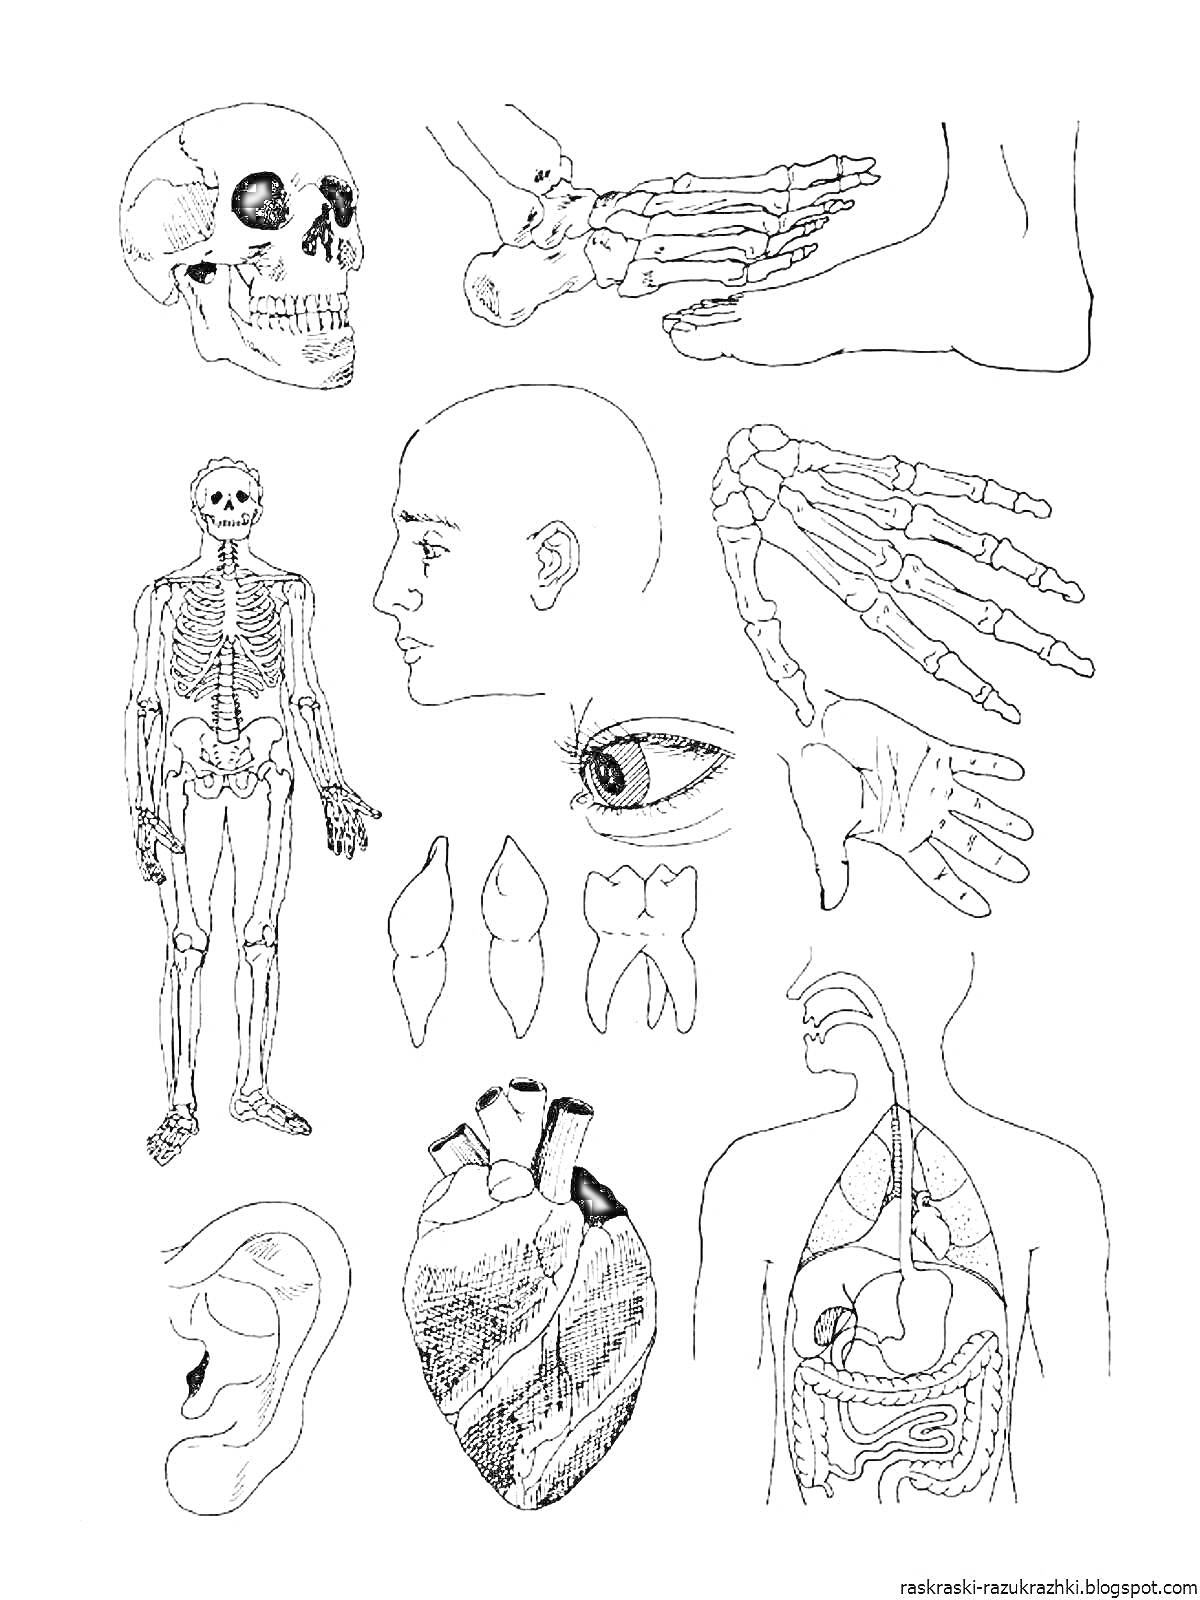 Раскраска – части тела человека: череп, ступня, скелет, голова, кисть руки, зубы, глаз, сердце, грудная клетка